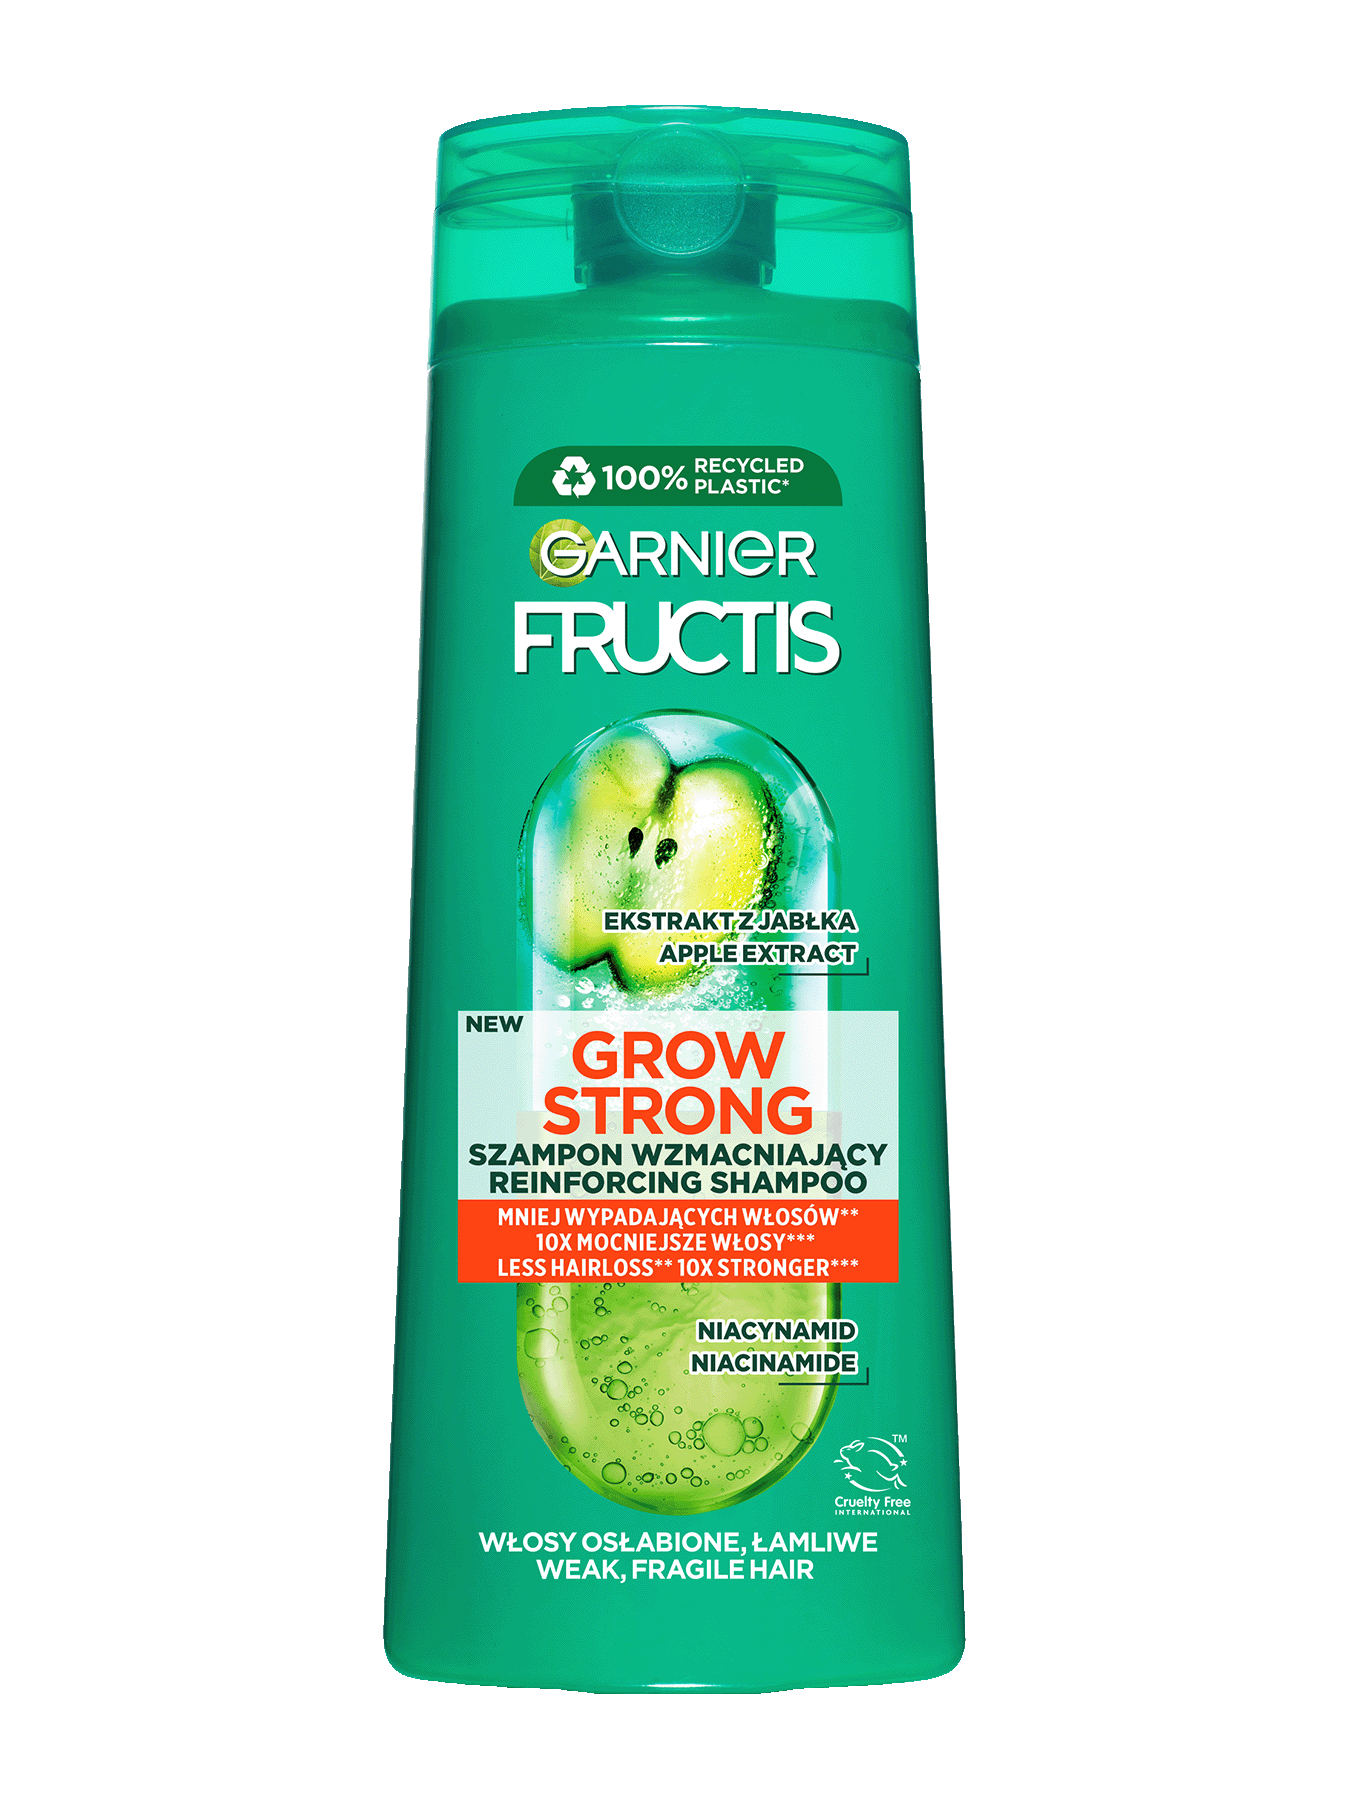 Fructis_grow_strong_1350x1800